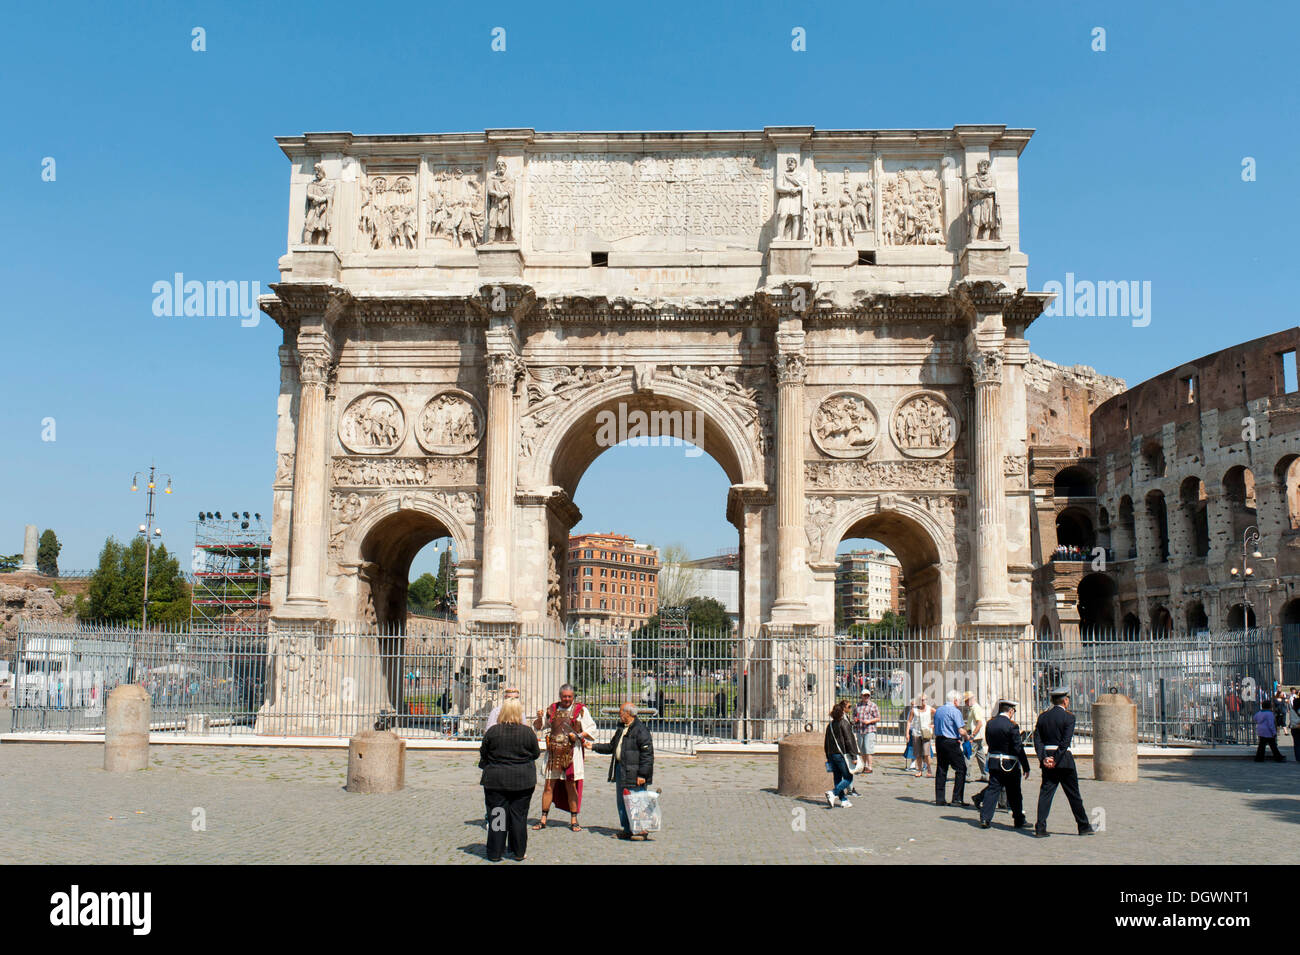 L'antiquité romaine, l'Arc de triomphe sur la Via Triumphalis street, l'empereur Constantin, Arc de Constantin, le Forum Romain, Rome antique Banque D'Images